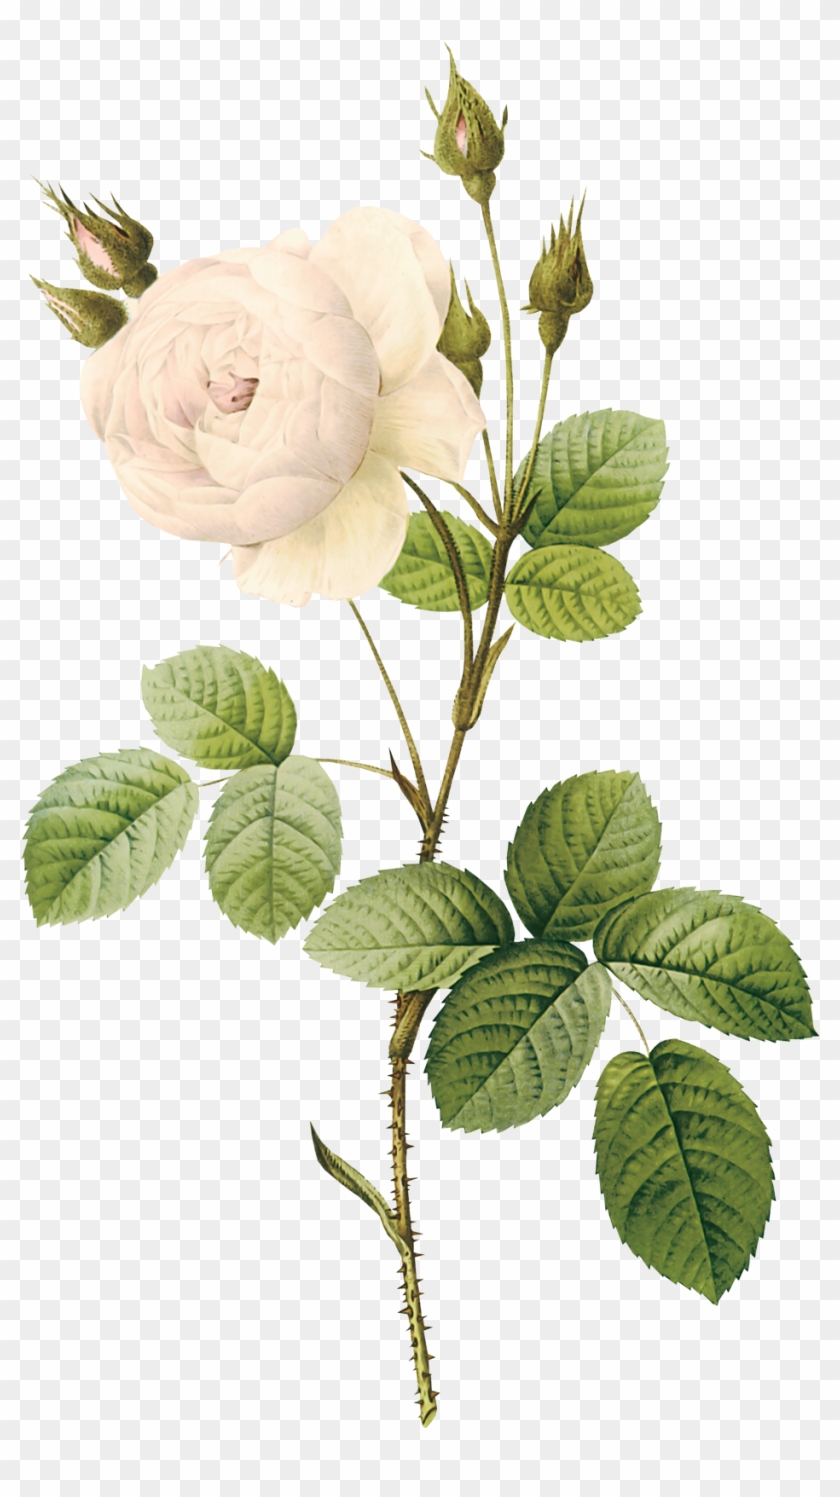 White Roses - White Flower Illustration Png Clipart #285836